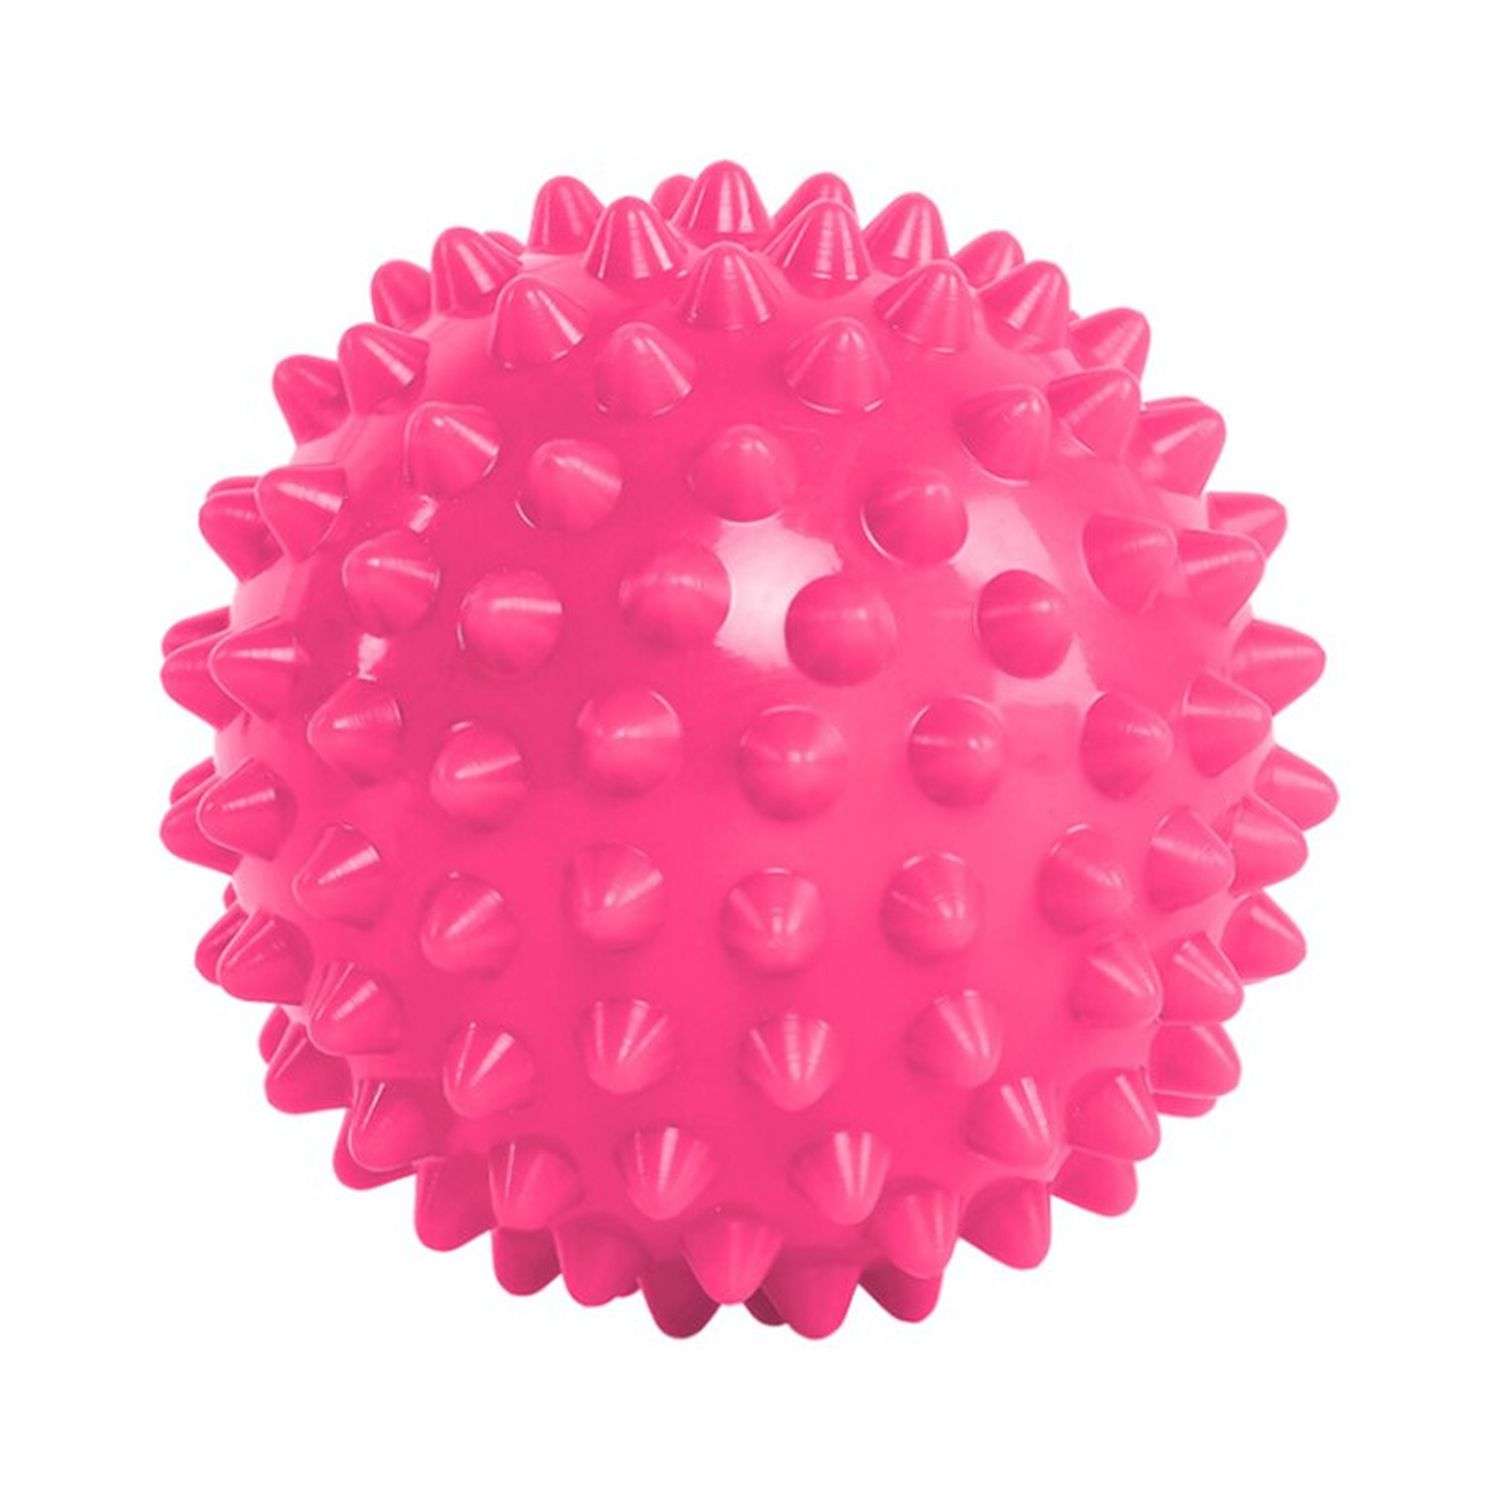 Мячик Beroma массажный 7 см розовый - фото 1